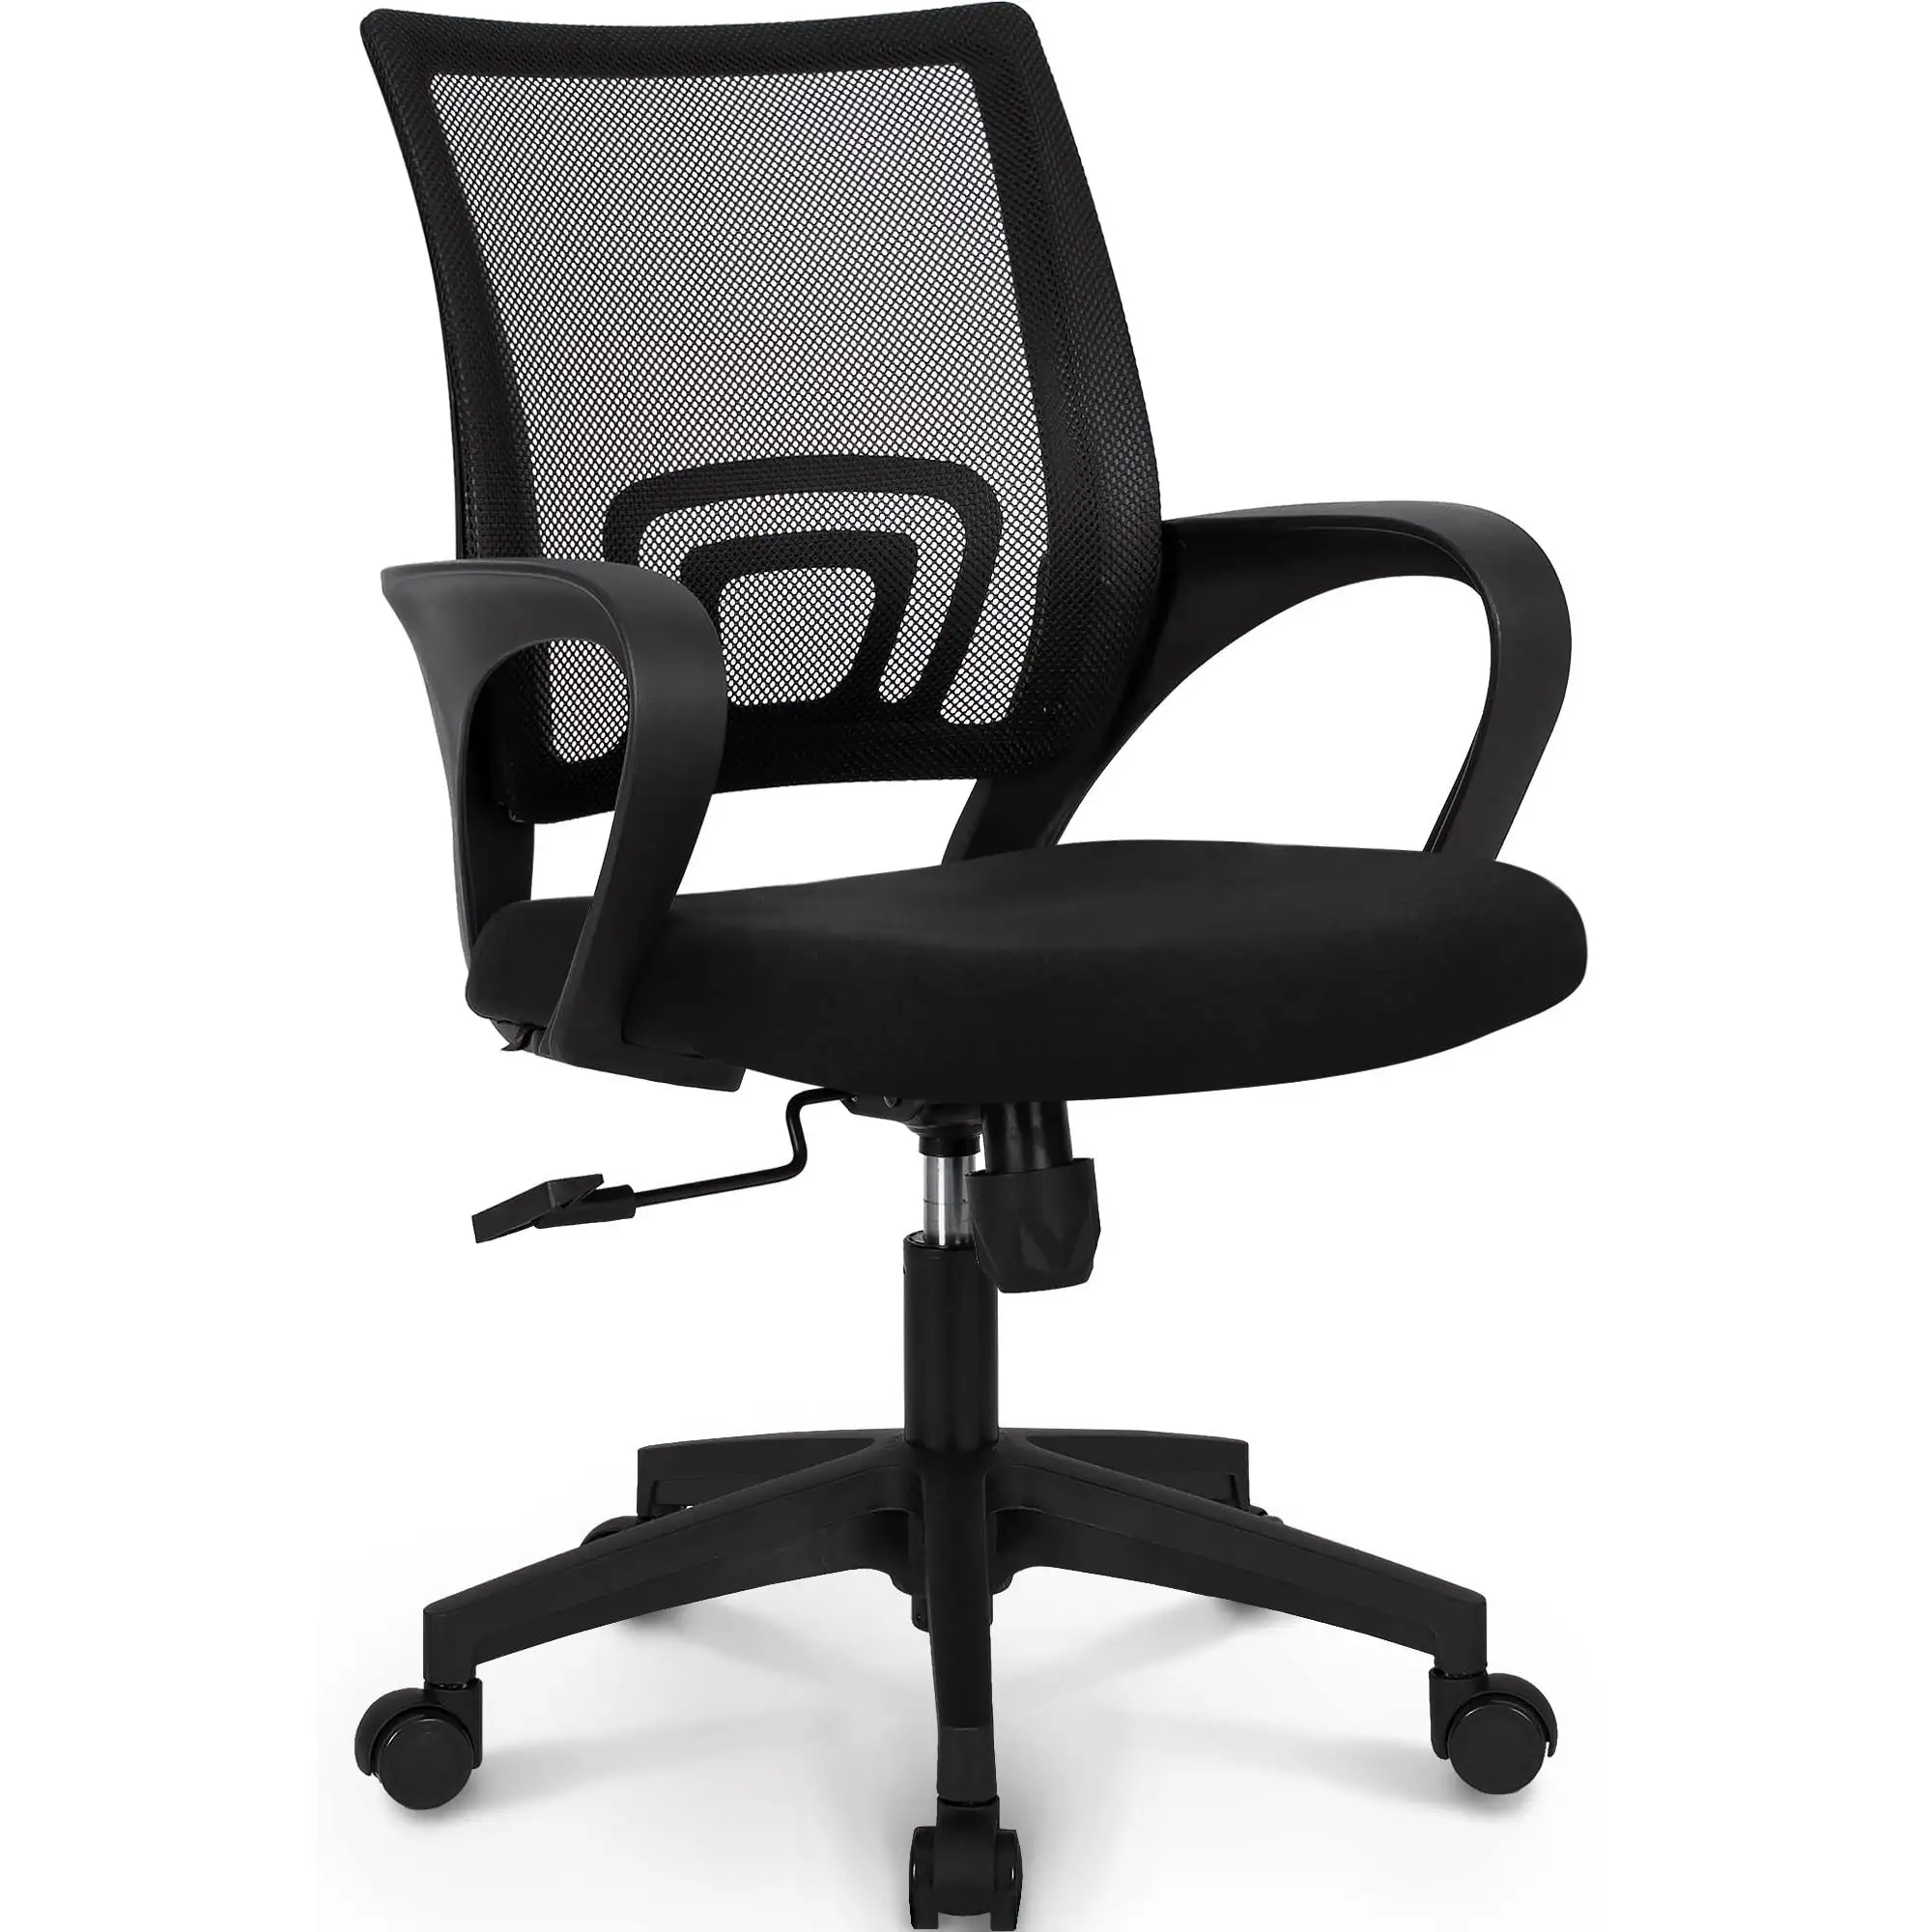 Cadeira giratória para escritório com encosto alto, cadeira giratória de escritório em malha ajustável em altura Home Office Furniture360